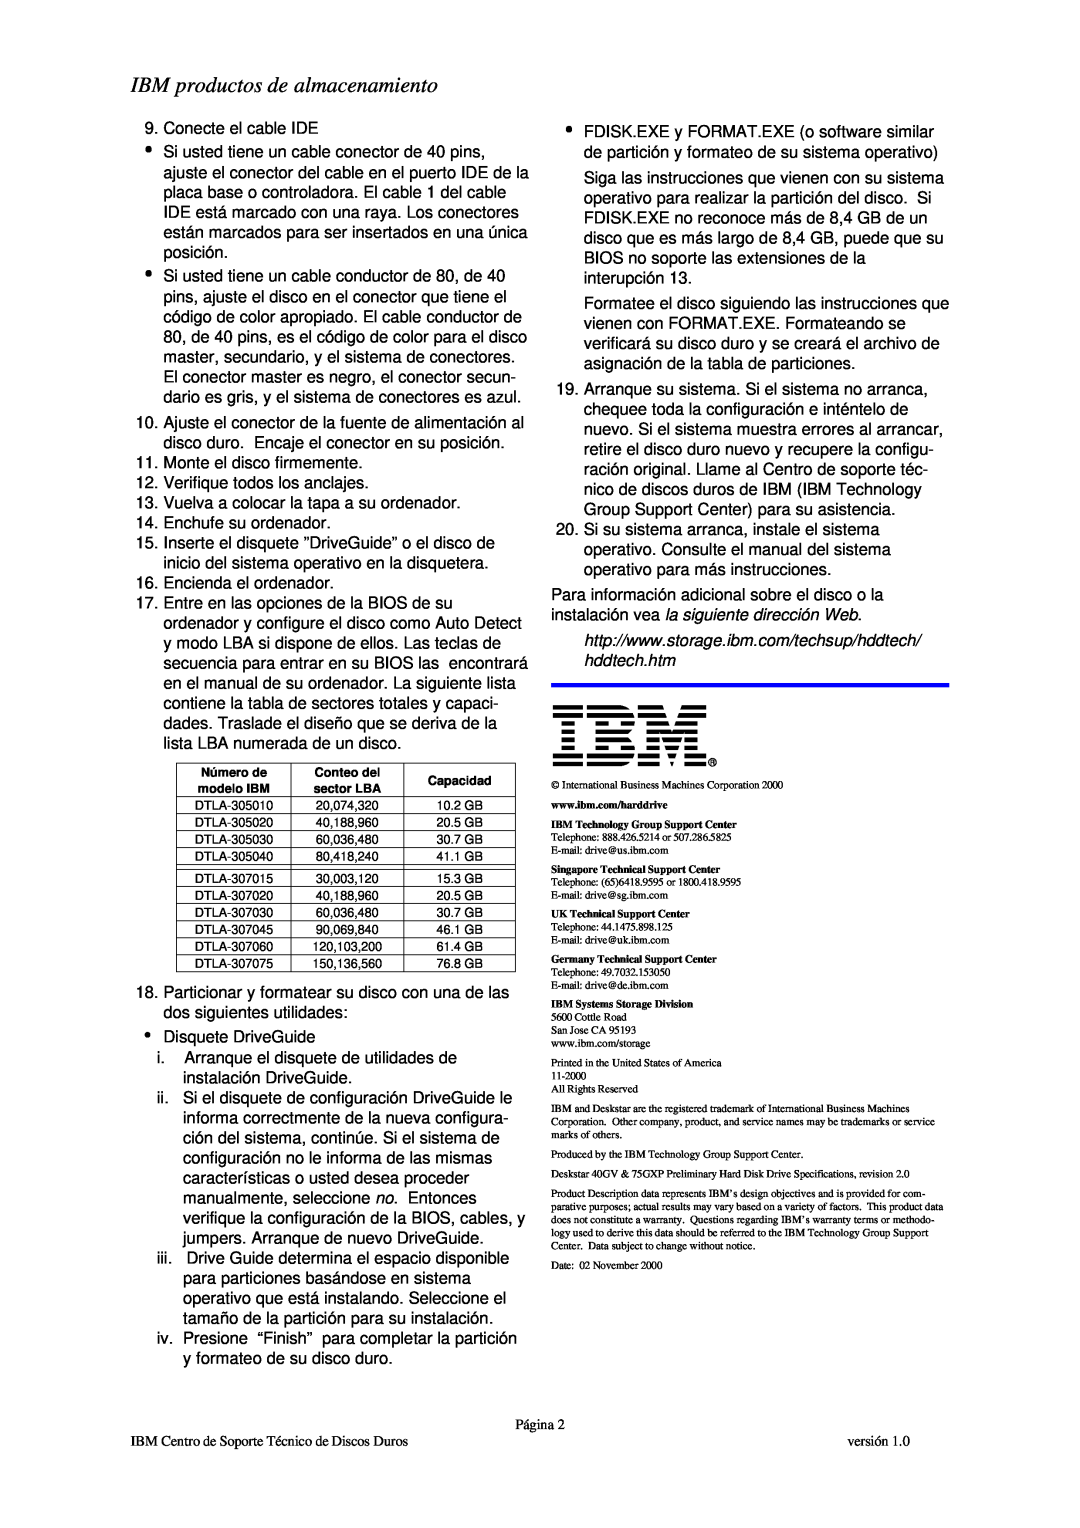 IBM DTLA-307045, DTLA-307060, DTLA-305020, DTLA-307020, DTLA-307075, DTLA-372015 hddtech.htm, IBM productos de almacenamiento 